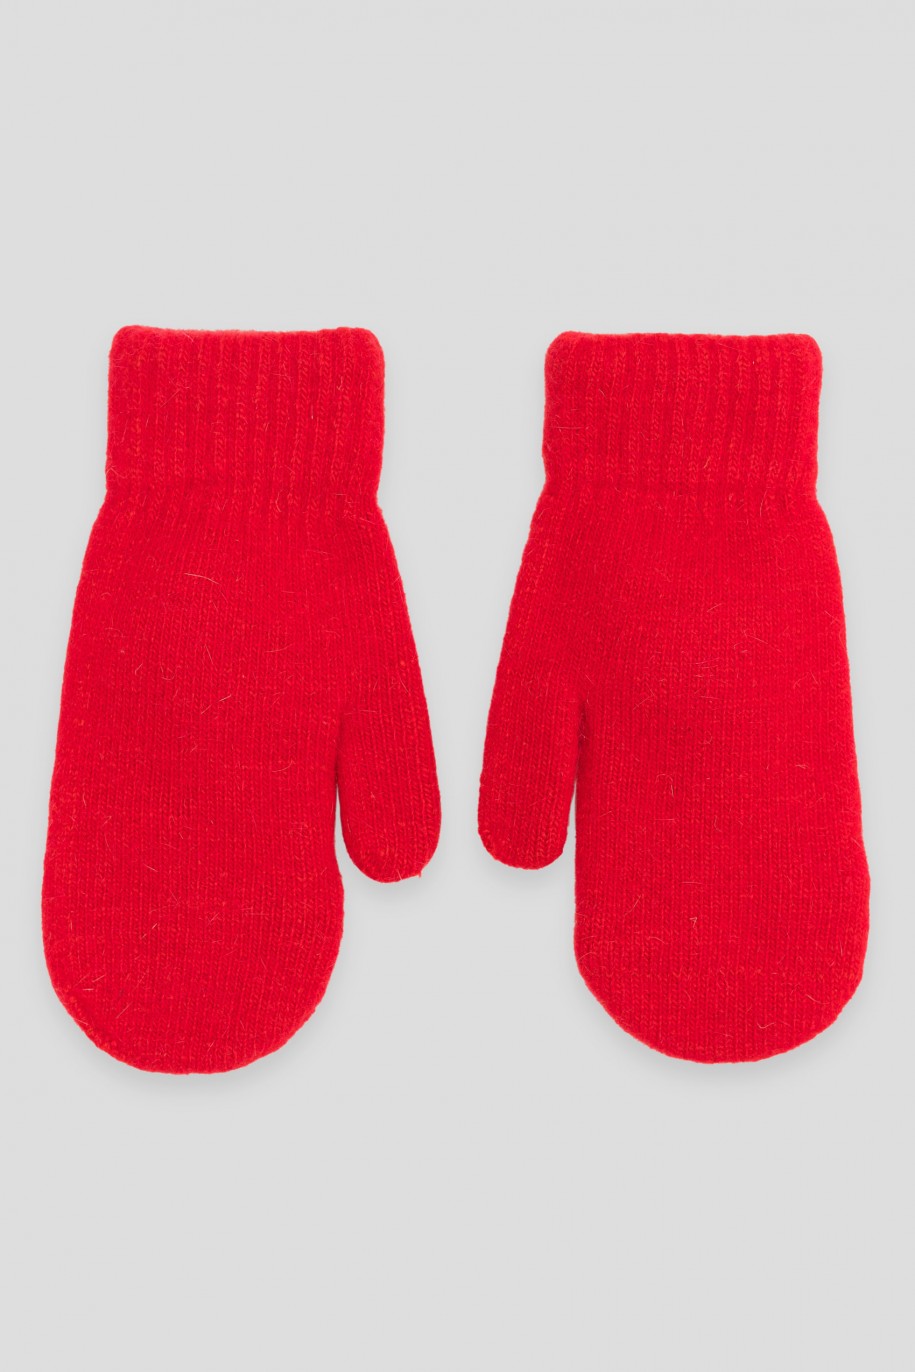 Czerwone rękawiczki ze świątecznymi naszywkami - 45113